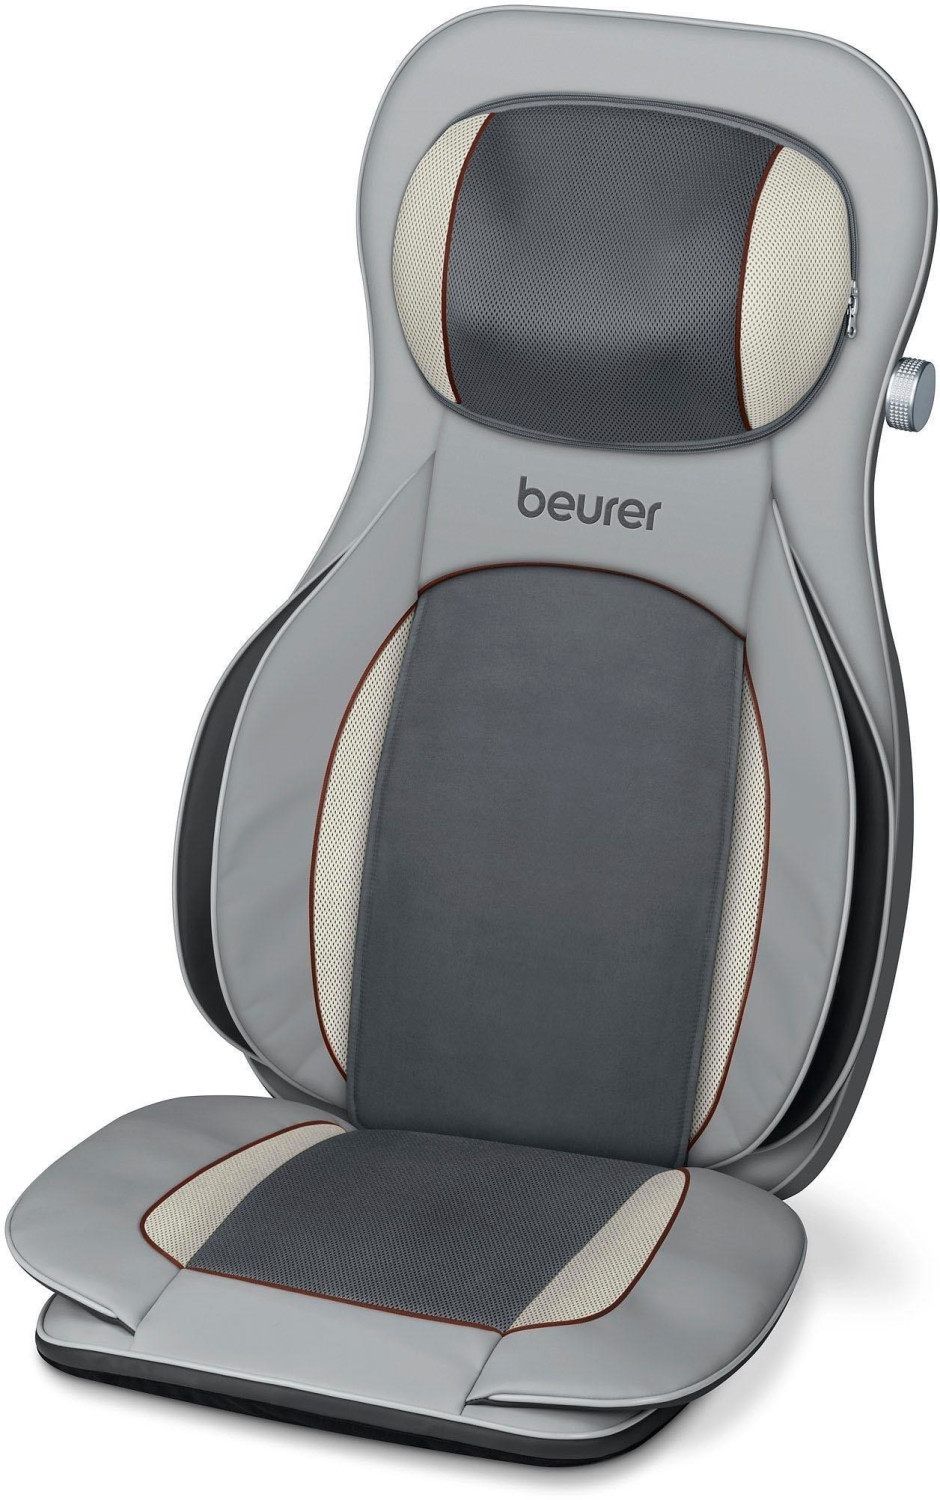 Angebot: Beurer MG 240 HD-heat Massage Sitzauflage für nur 89.95 kaufen